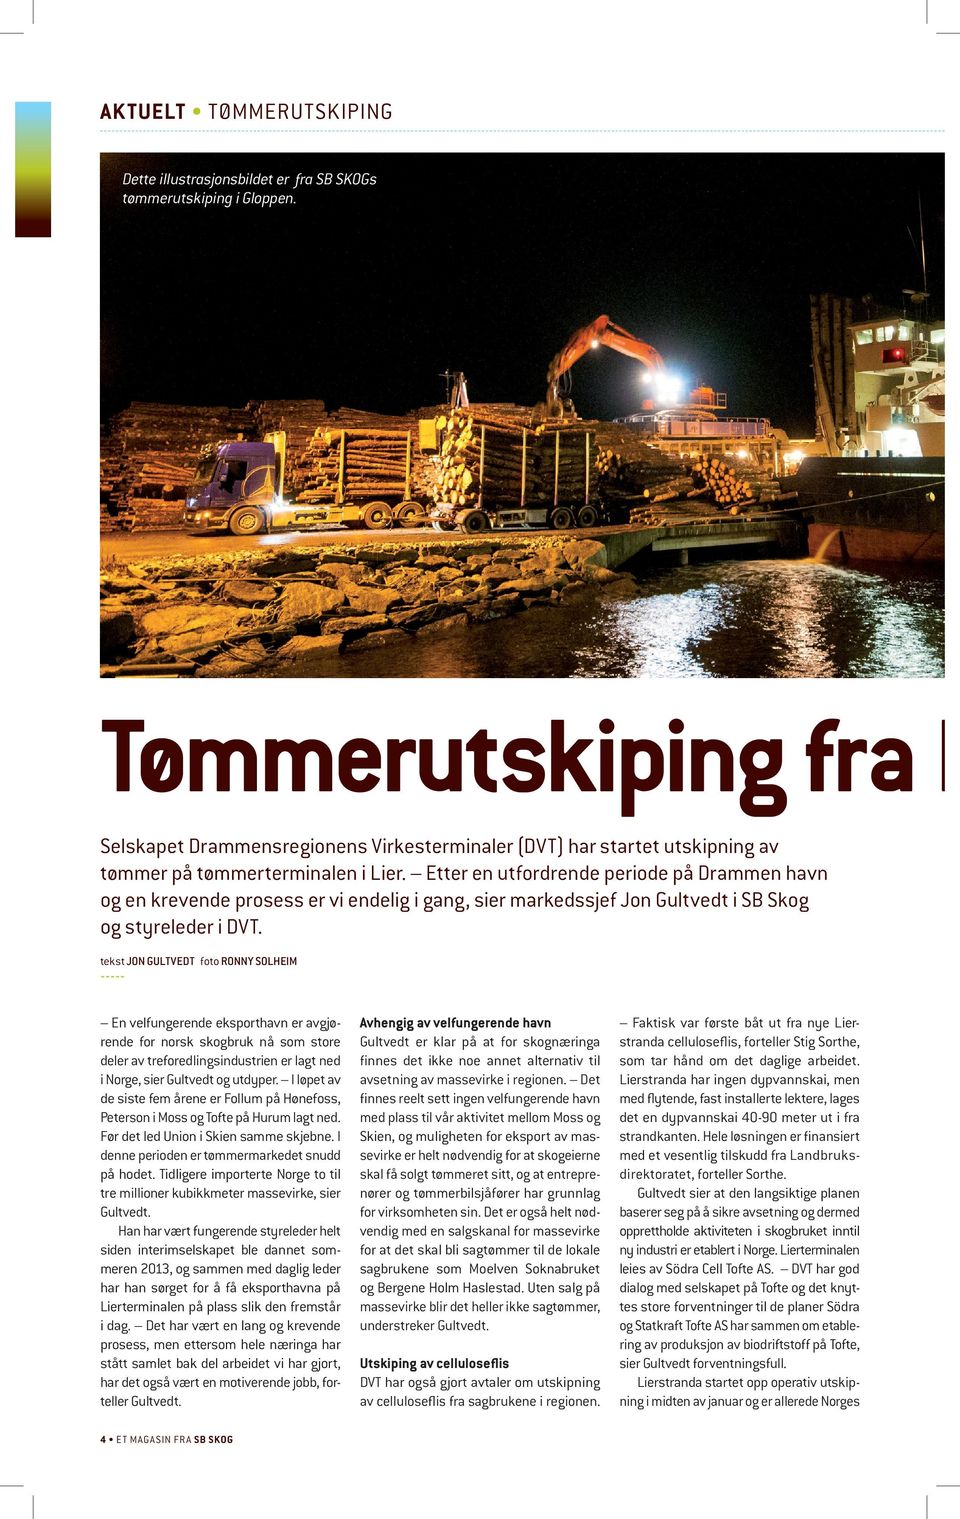 Etter en utfordrende periode på Drammen havn og en krevende prosess er vi endelig i gang, sier markedssjef Jon Gultvedt i SB Skog og styreleder i DVT.